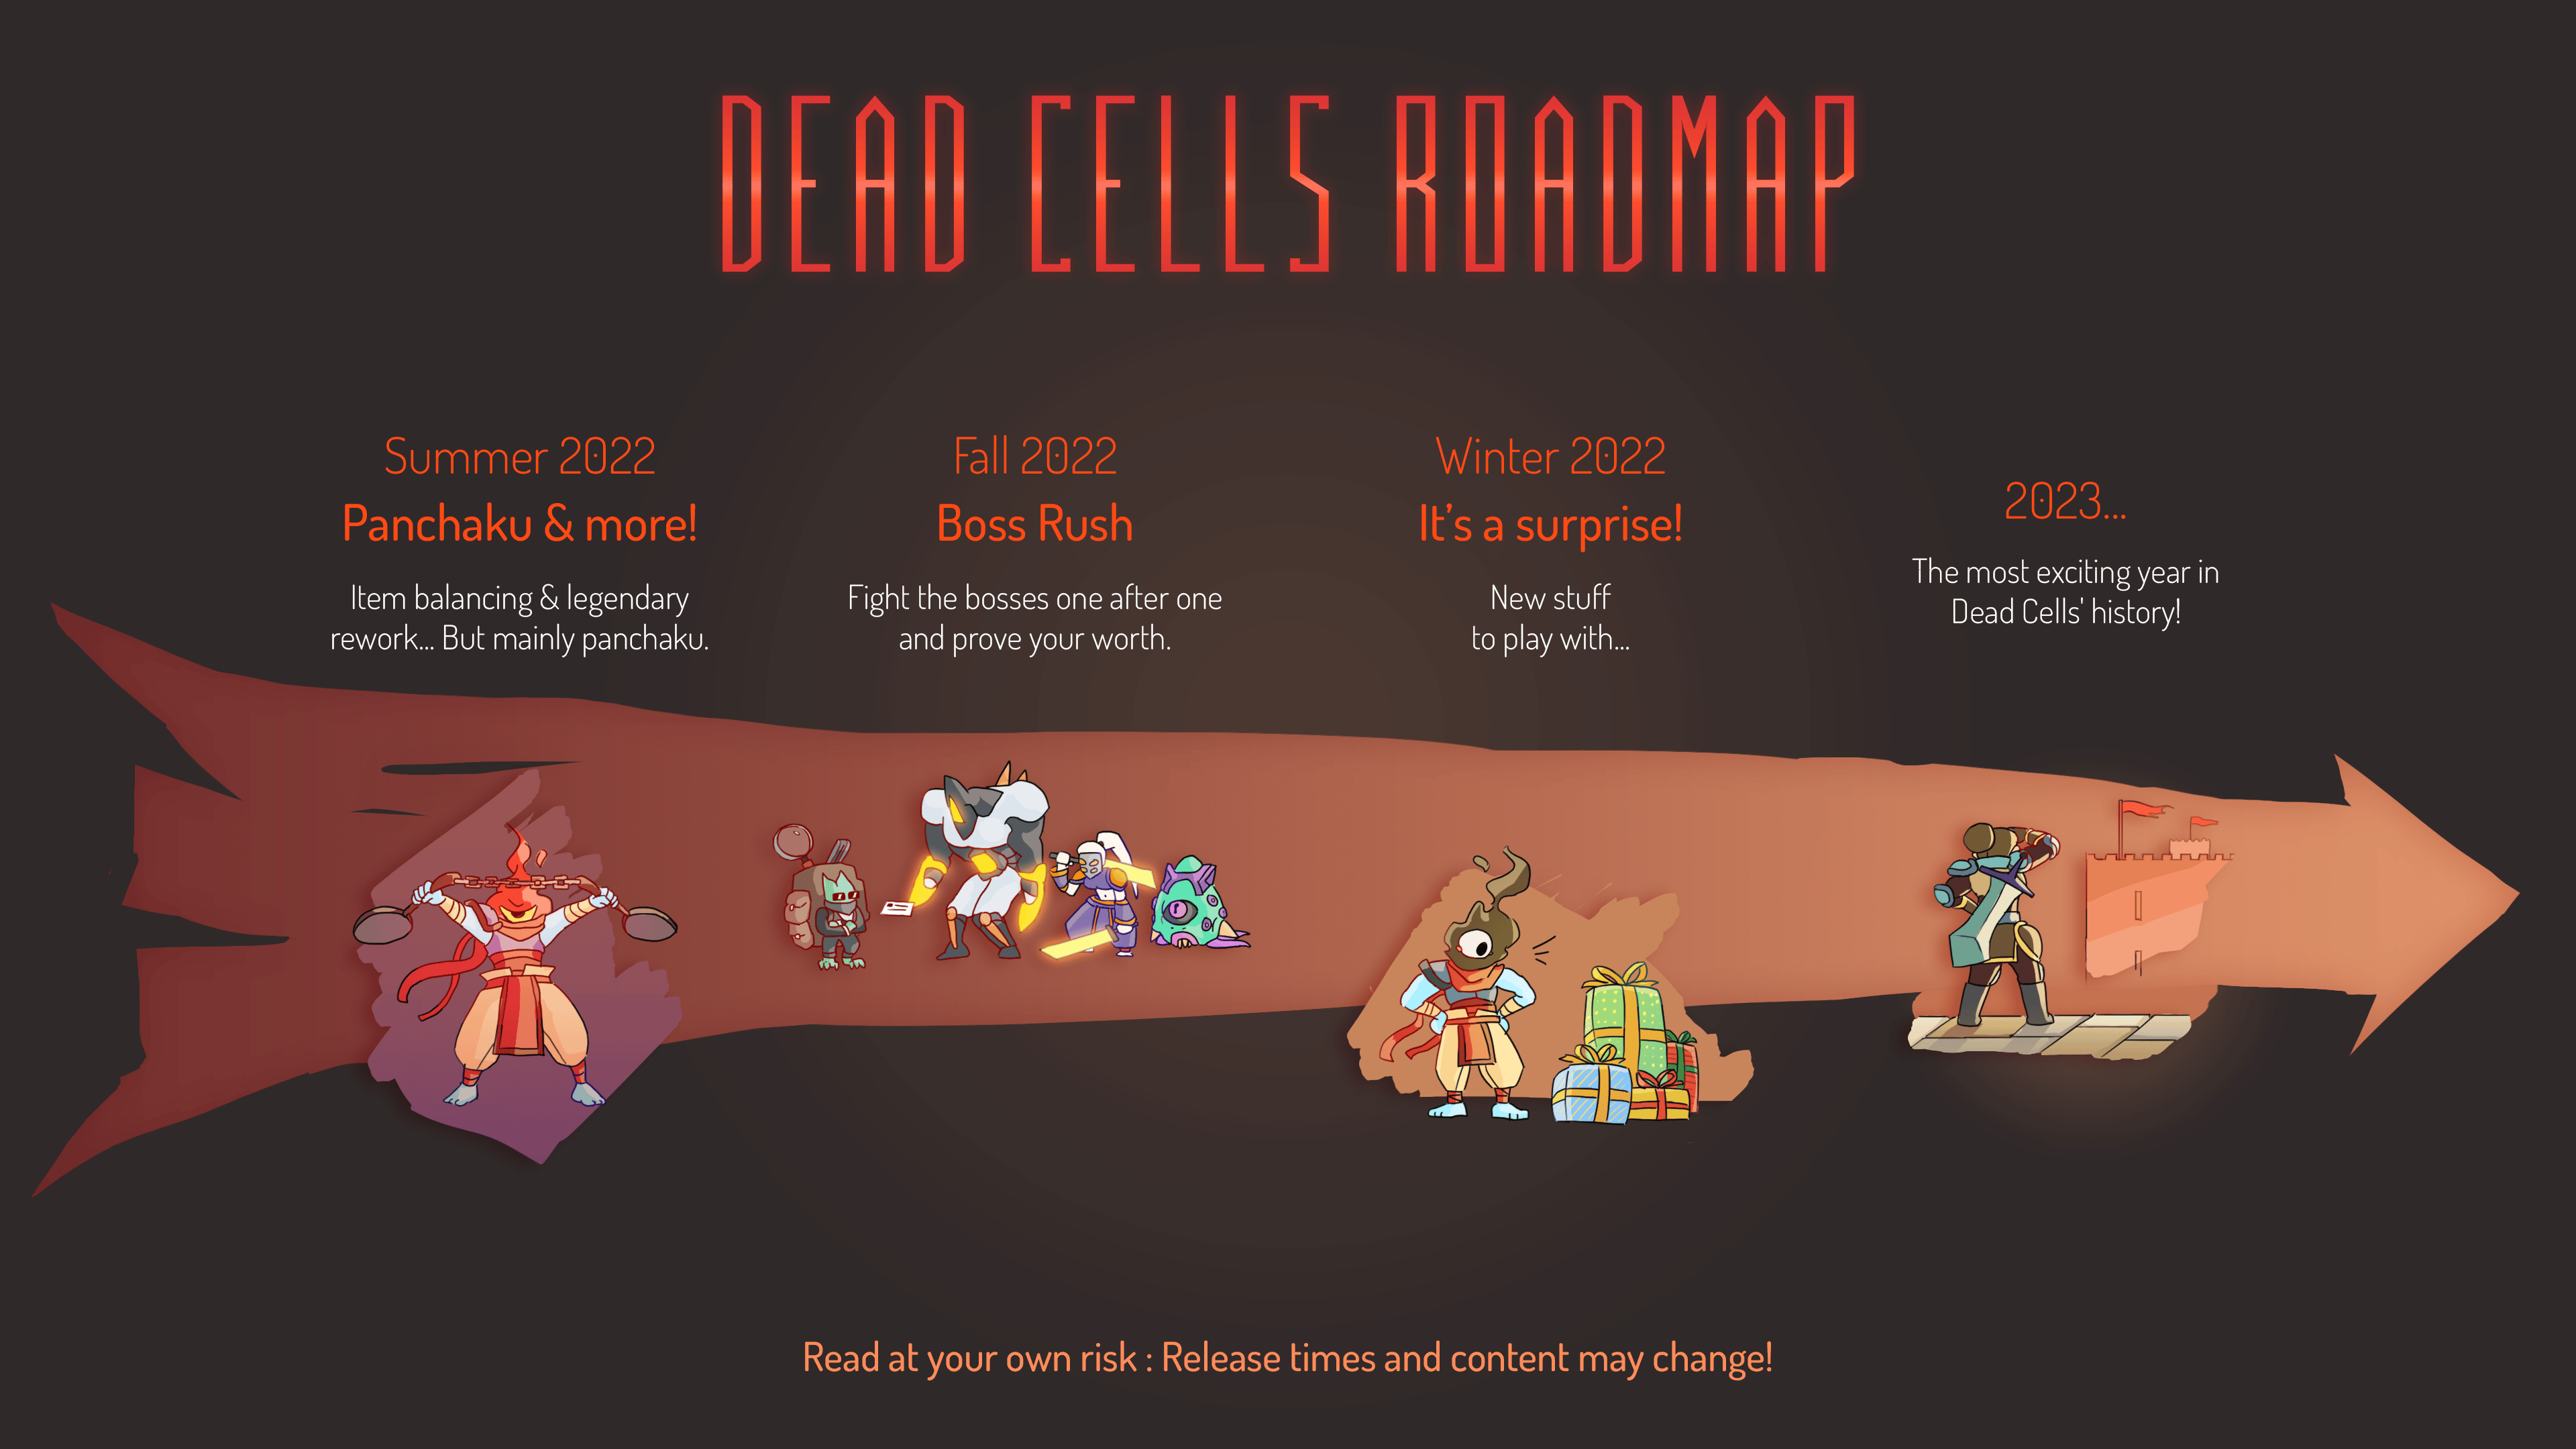 Dead Cells 2022 Roadmap